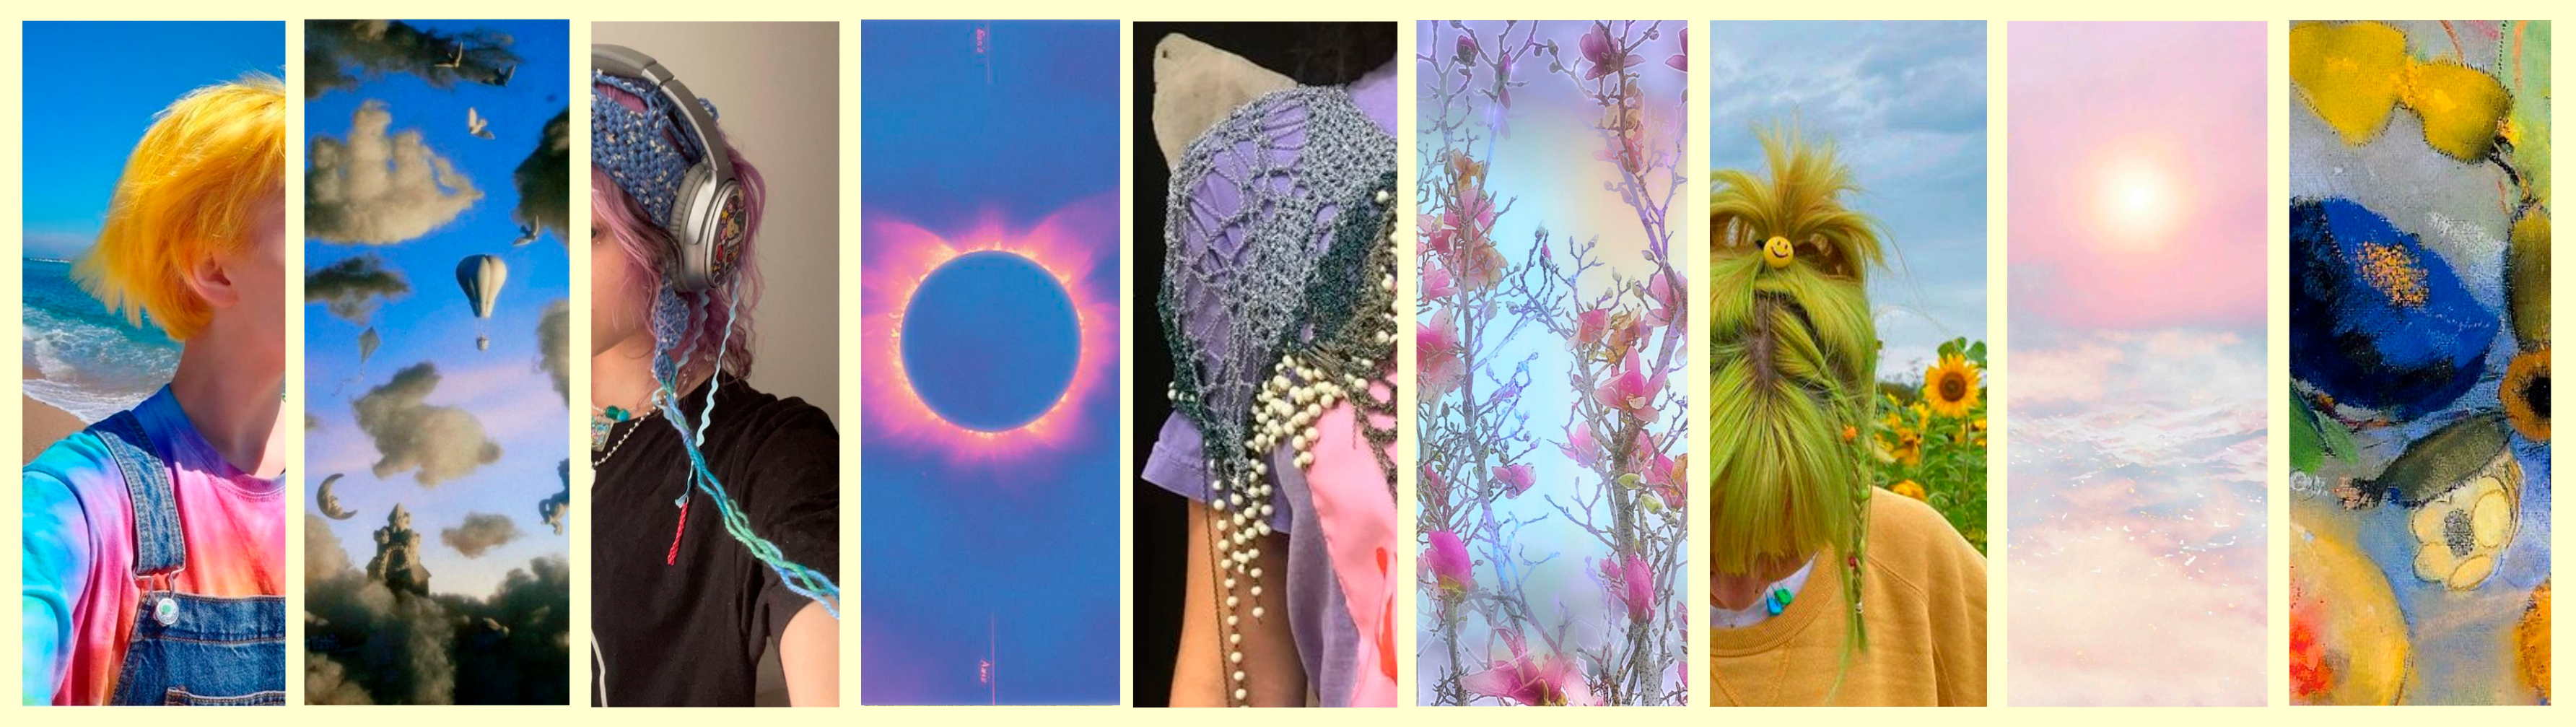 Collage de fotos de ropas, cortes de pelo, flores, un eclipse solar, un amanecer en la playa y nubes, representando el estilo de Nethamet.